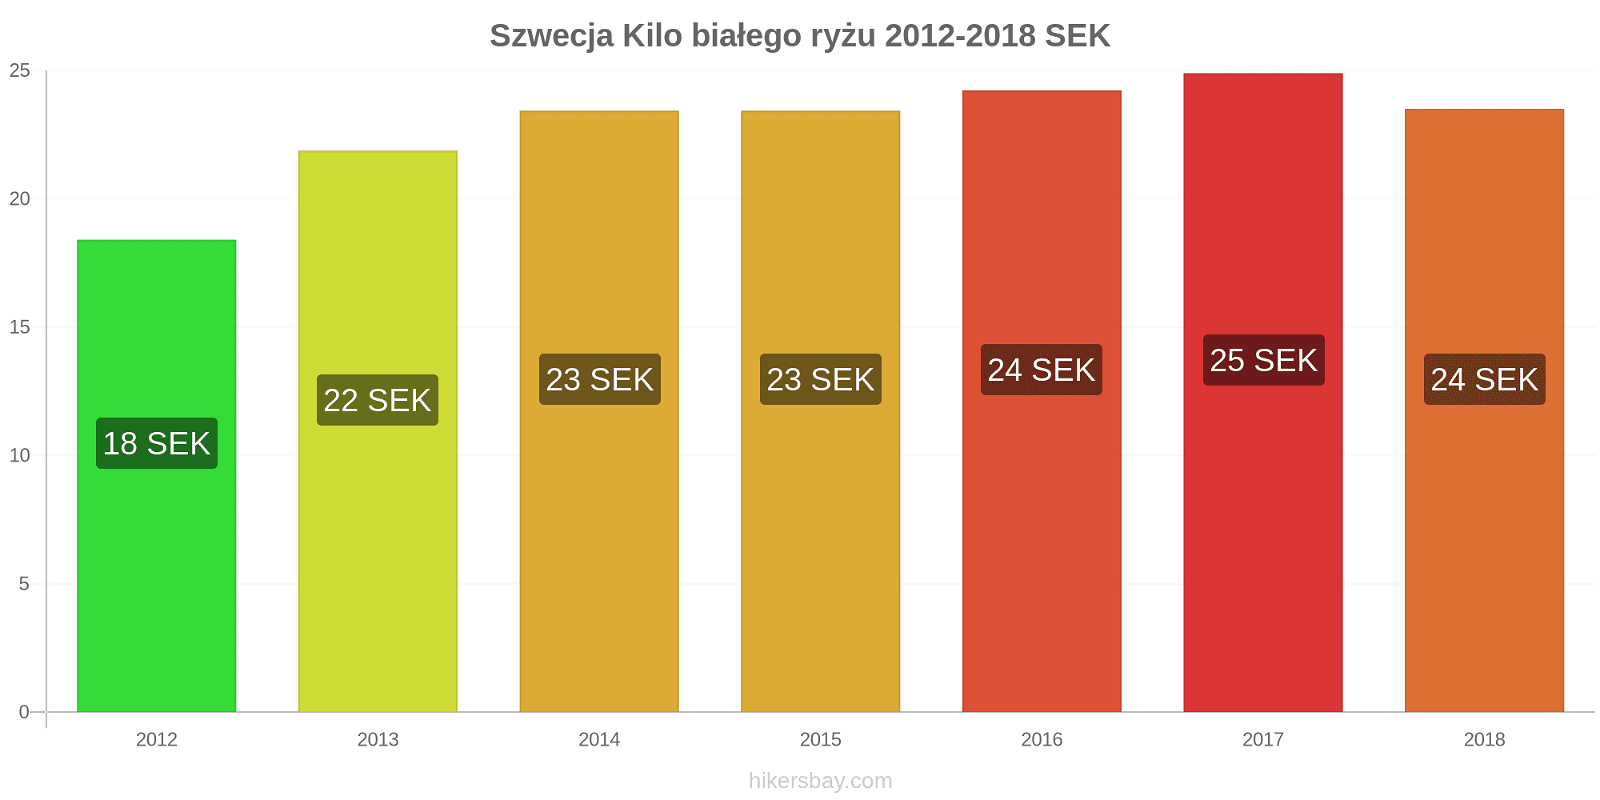 Szwecja zmiany cen Kilo białego ryżu hikersbay.com